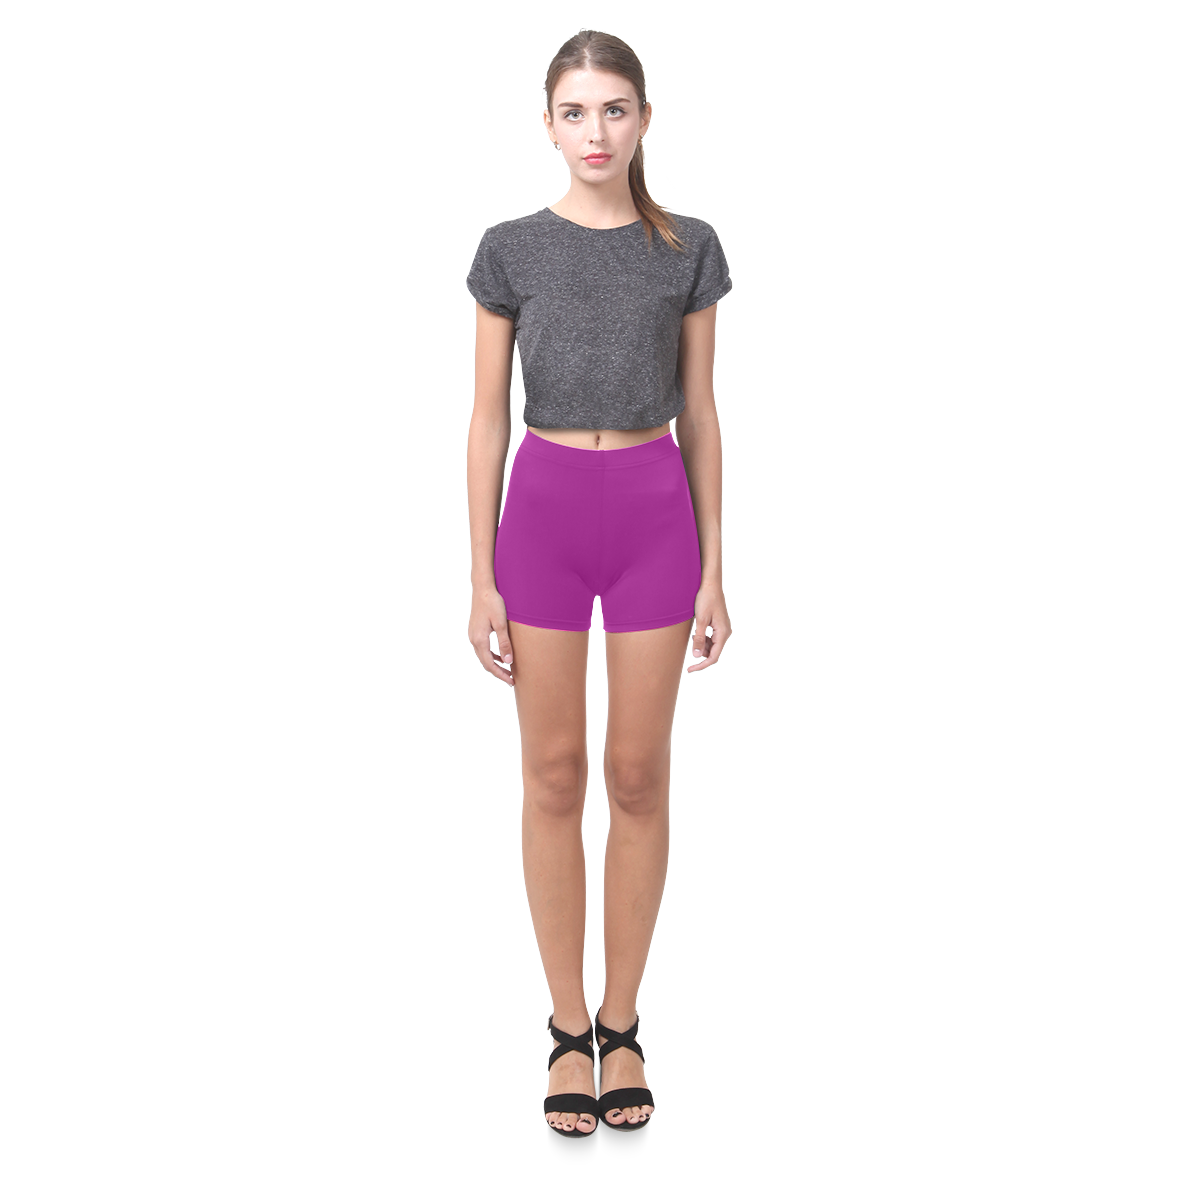 New in shop. Purple designers leggings edition 2016. Old - vintage tones, nice look. Briseis Skinny Shorts (Model L04)